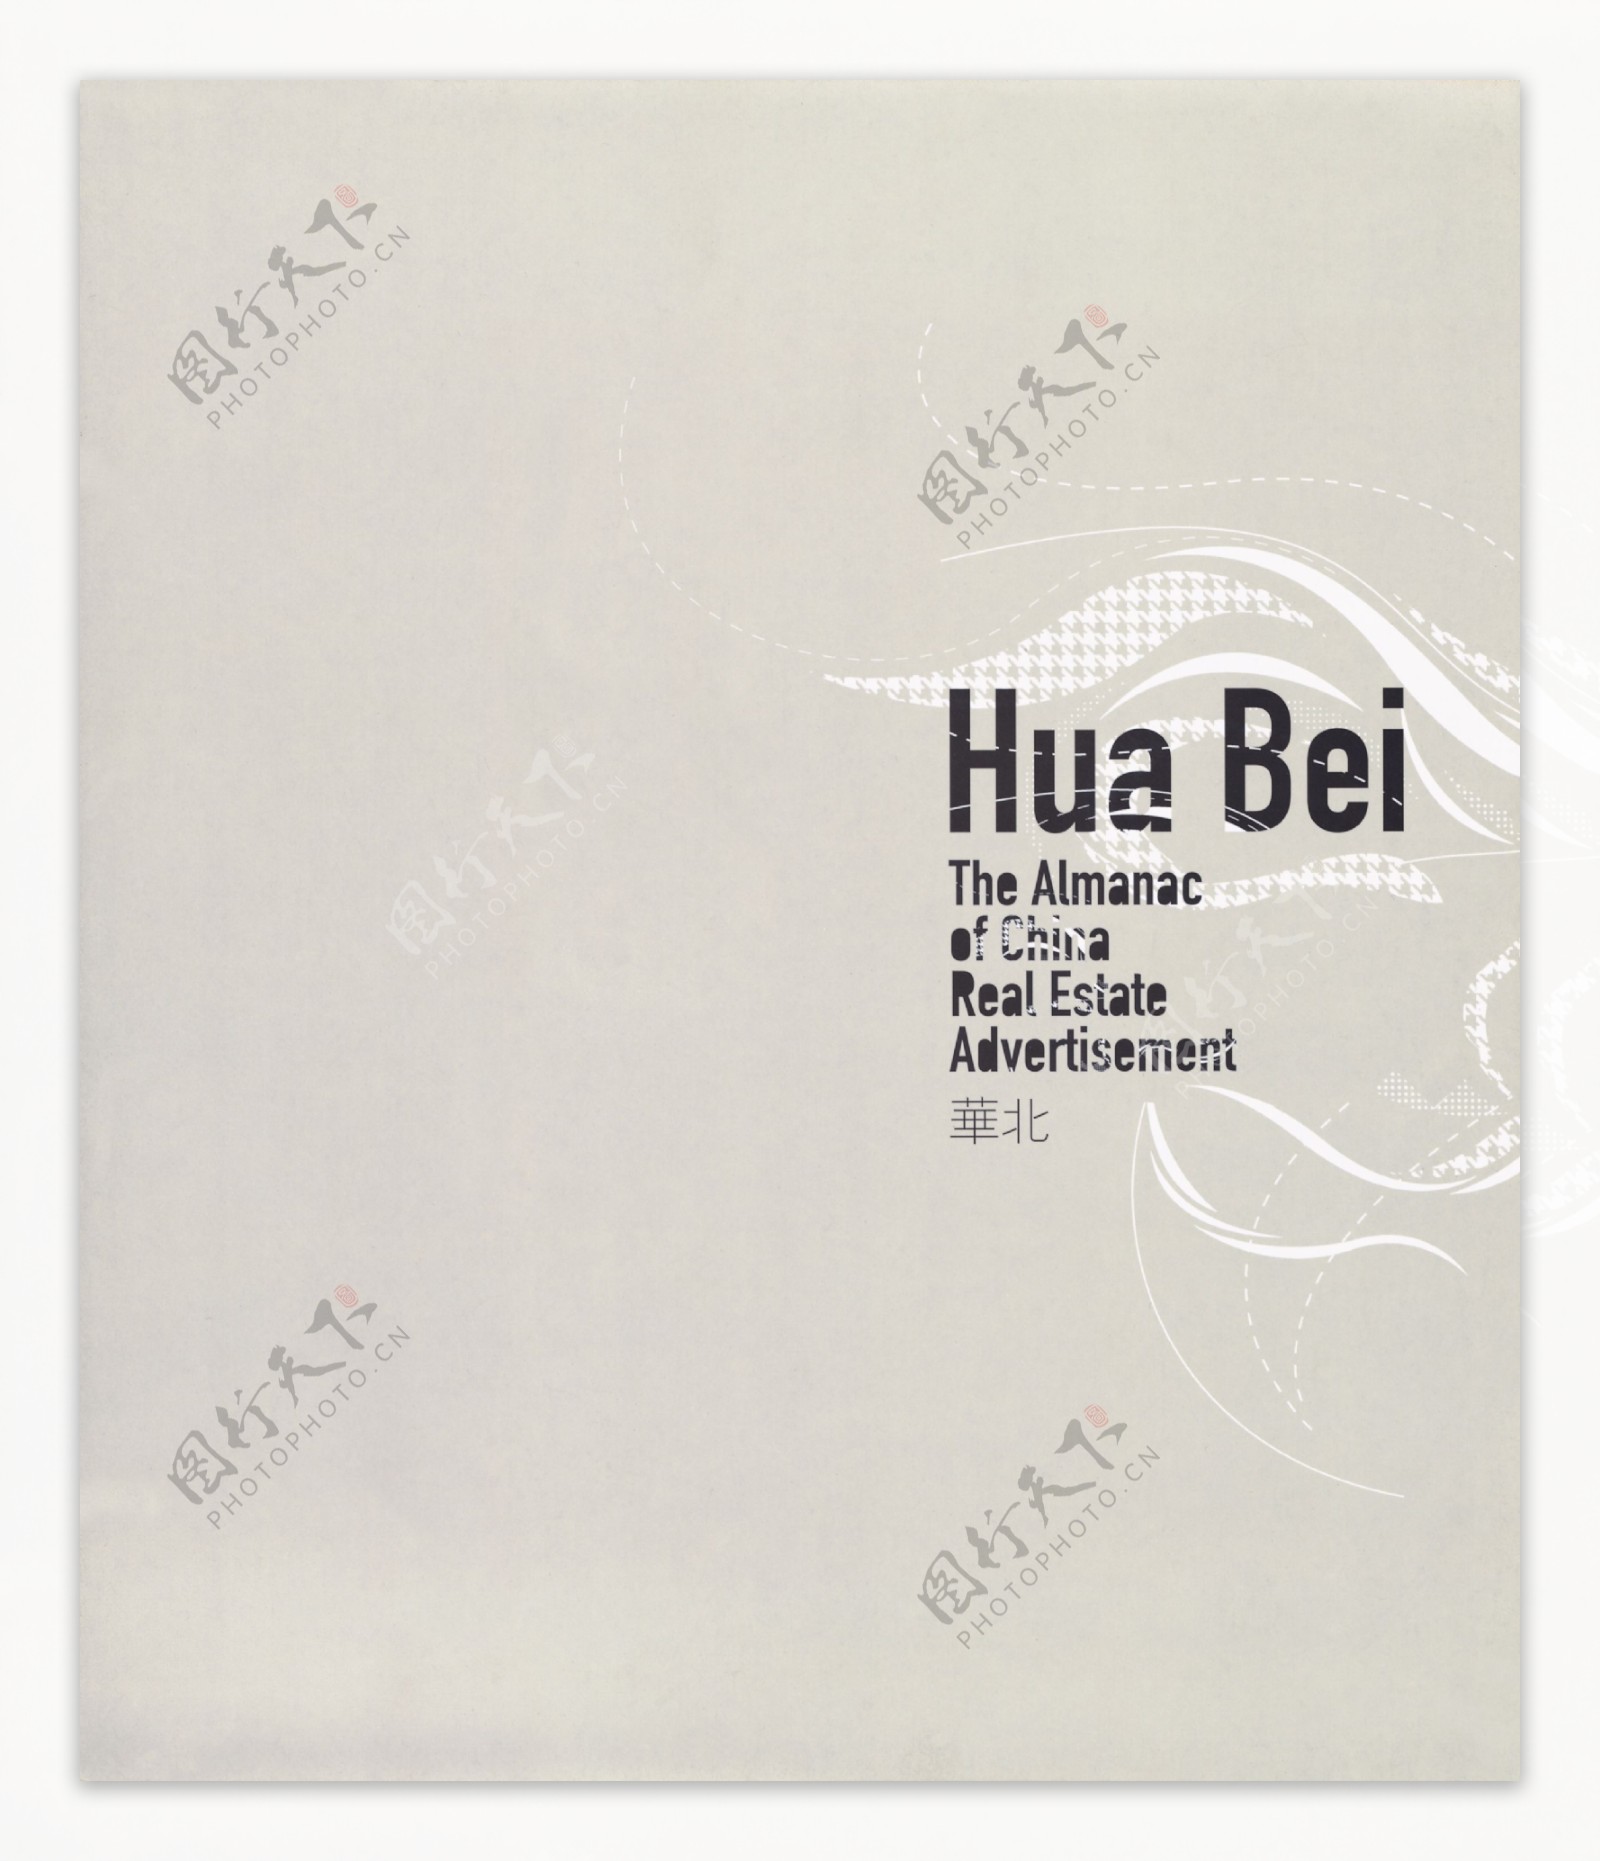 中国房地产广告年鉴第二册创意设计0011